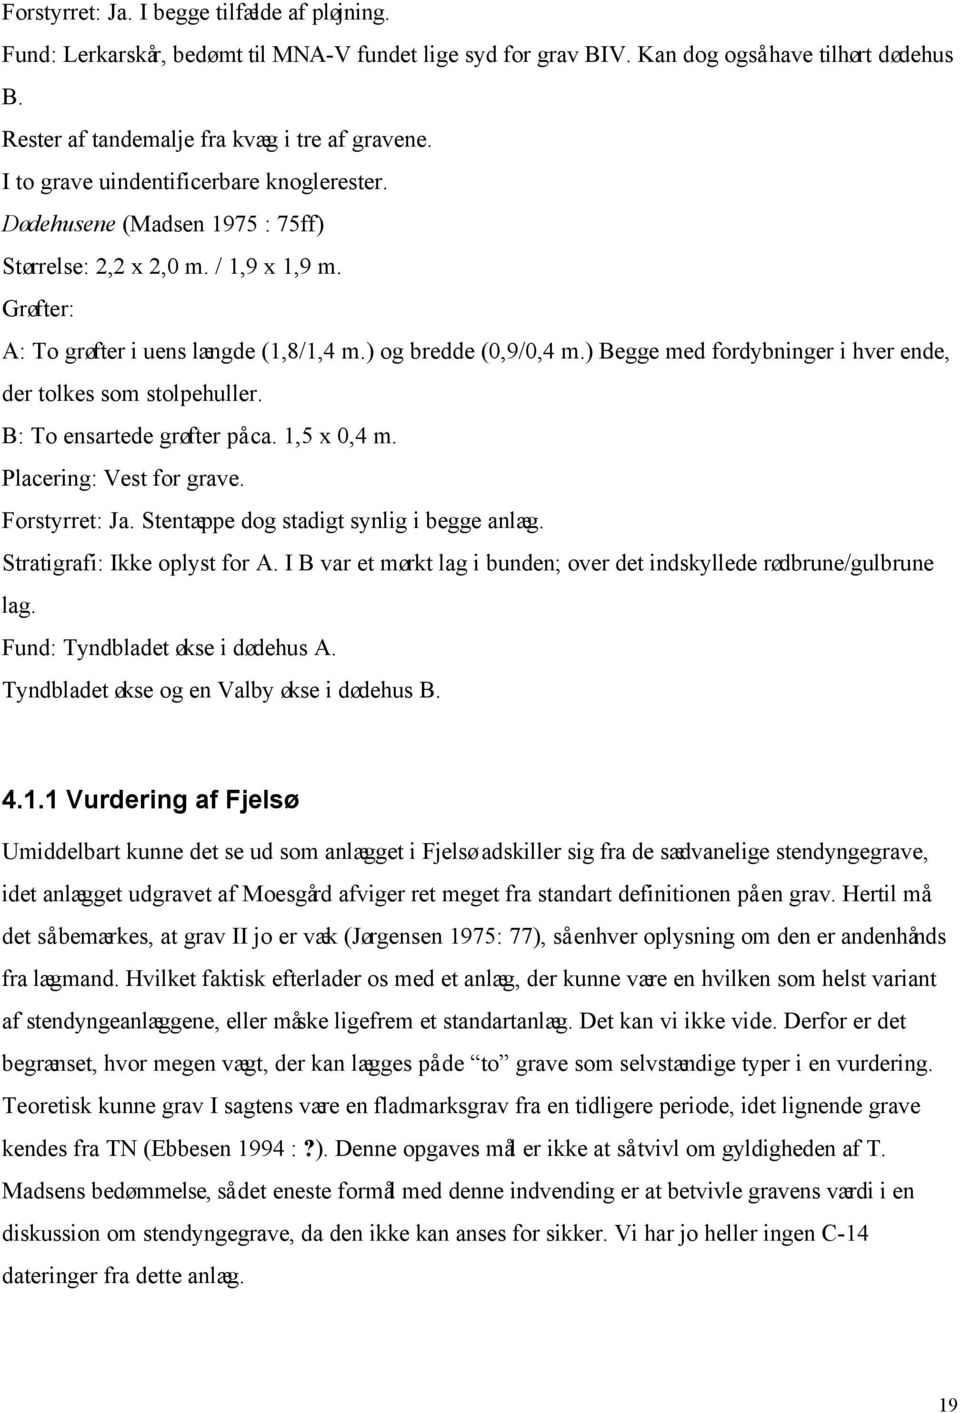 Stendyngegrave i Nordjylland - PDF Gratis download